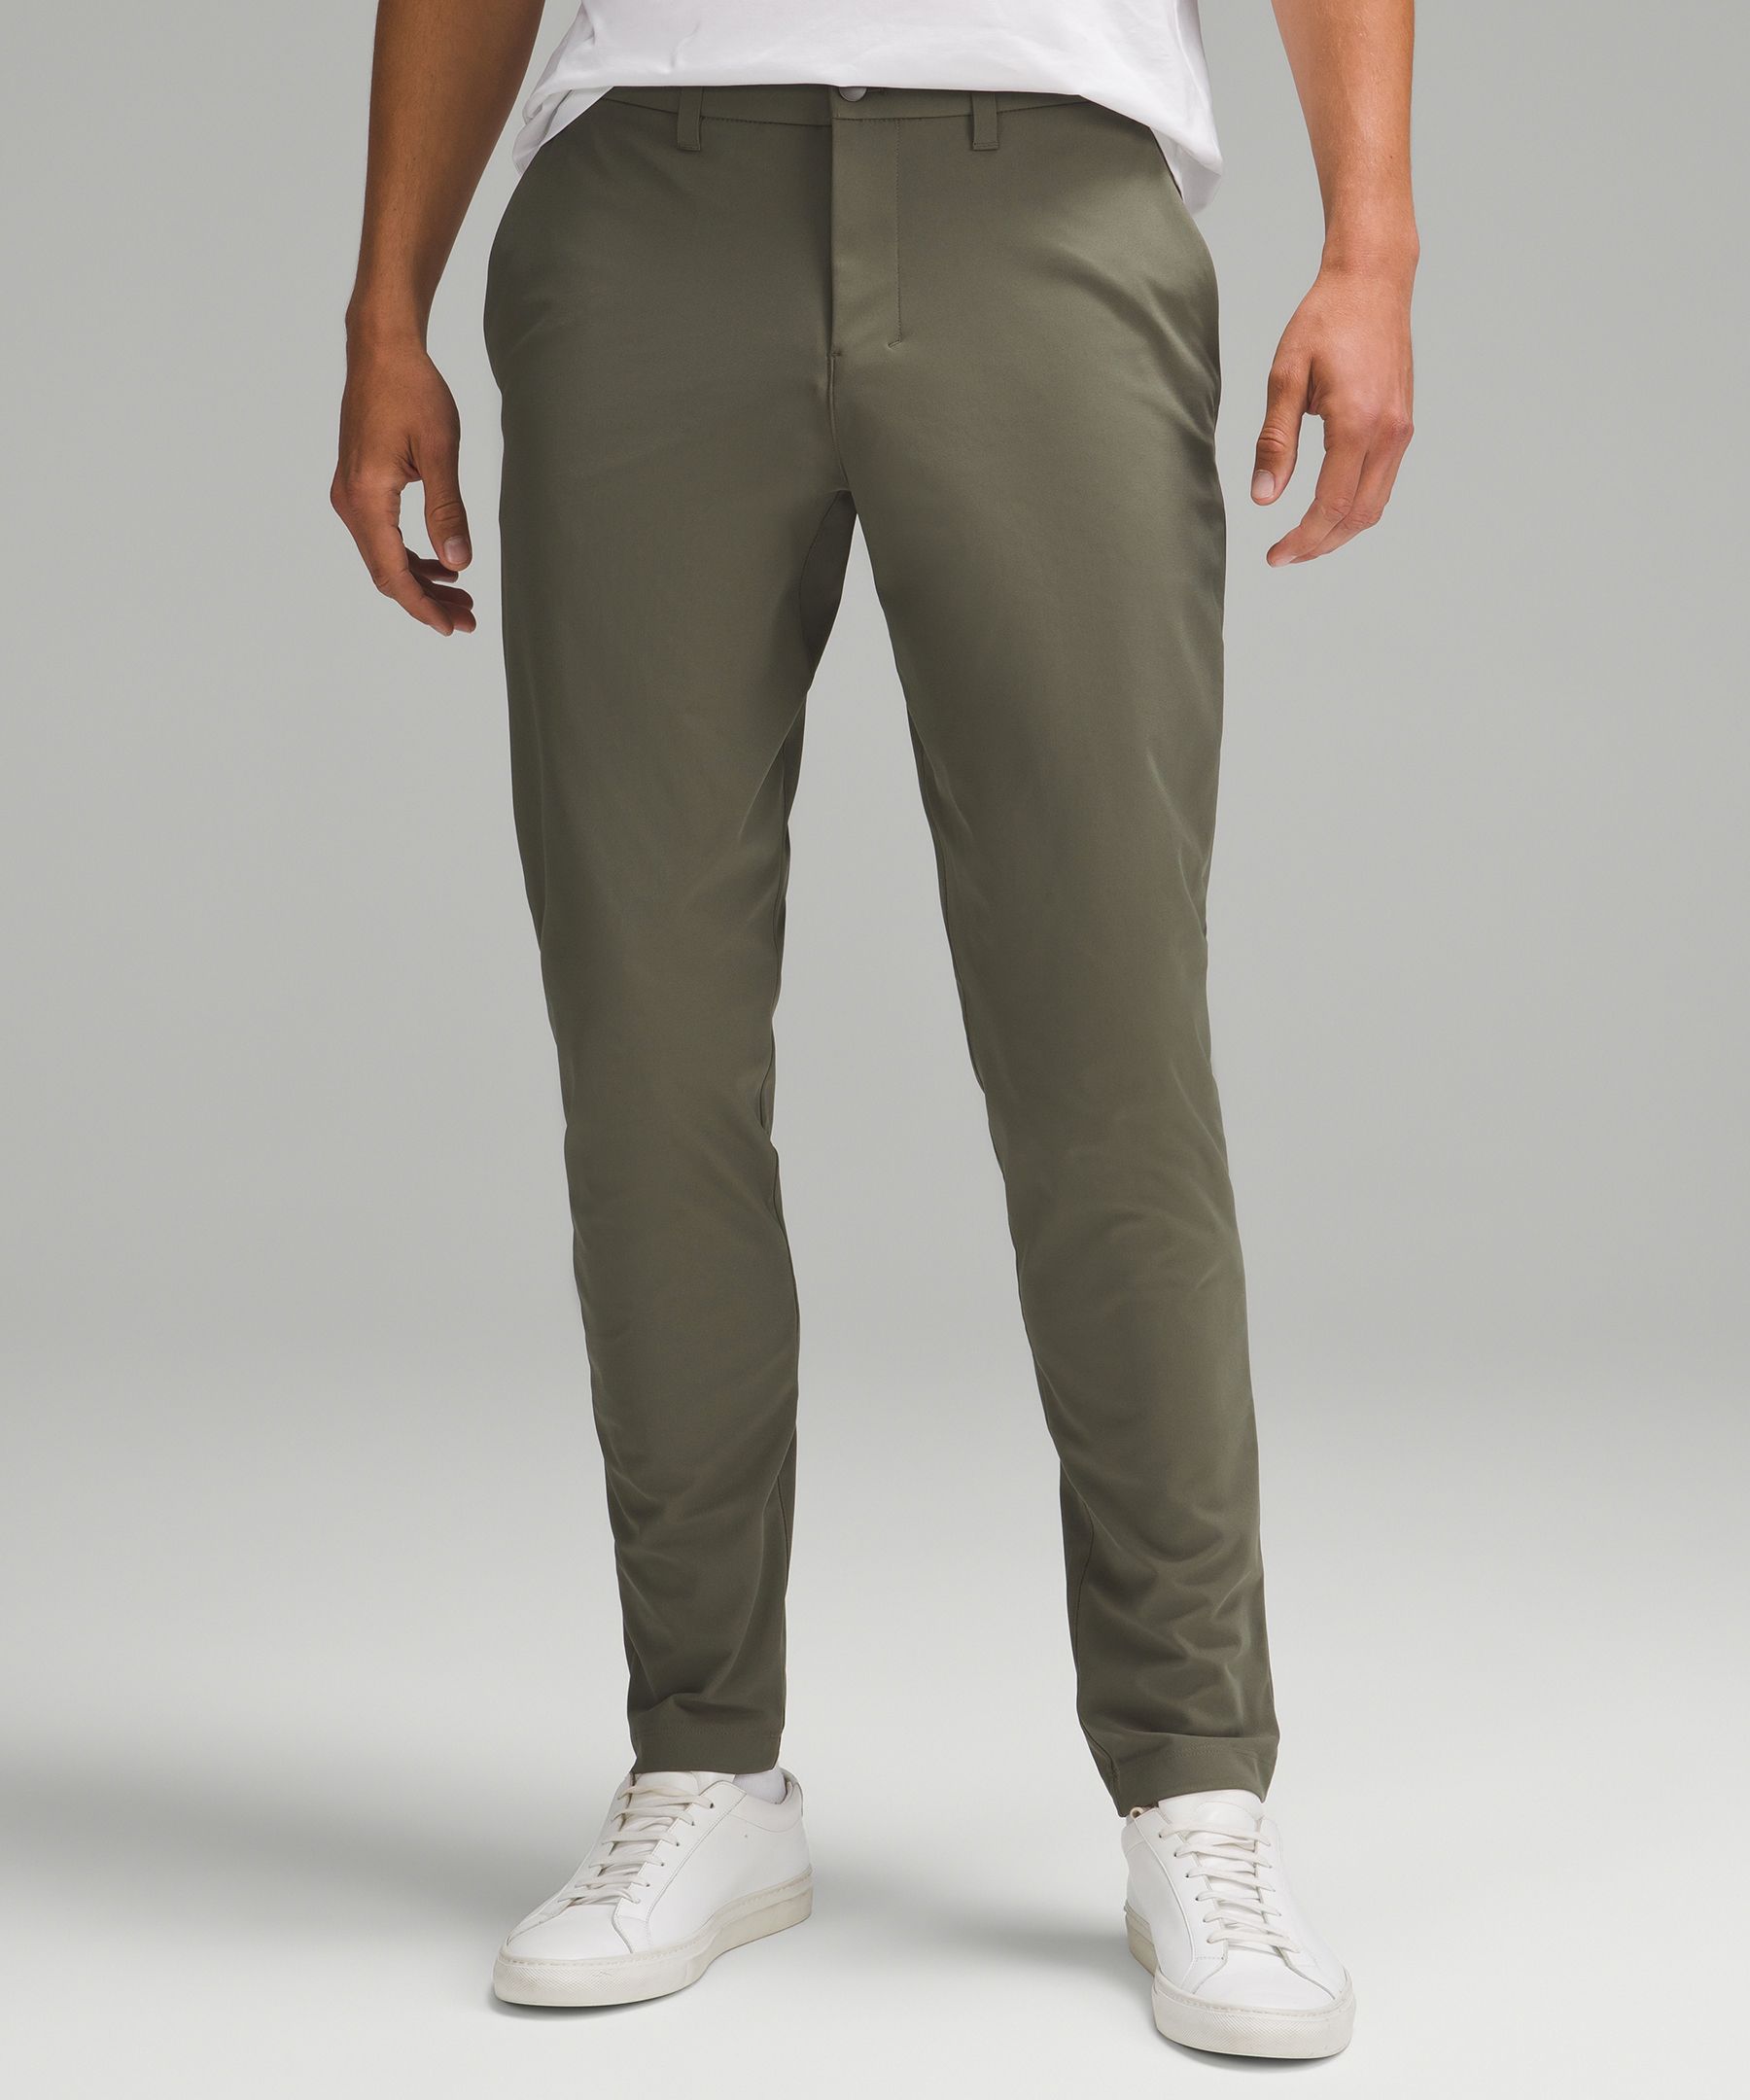 ABC Slim-Fit Trouser 32L *Warpstreme, Men's Trousers